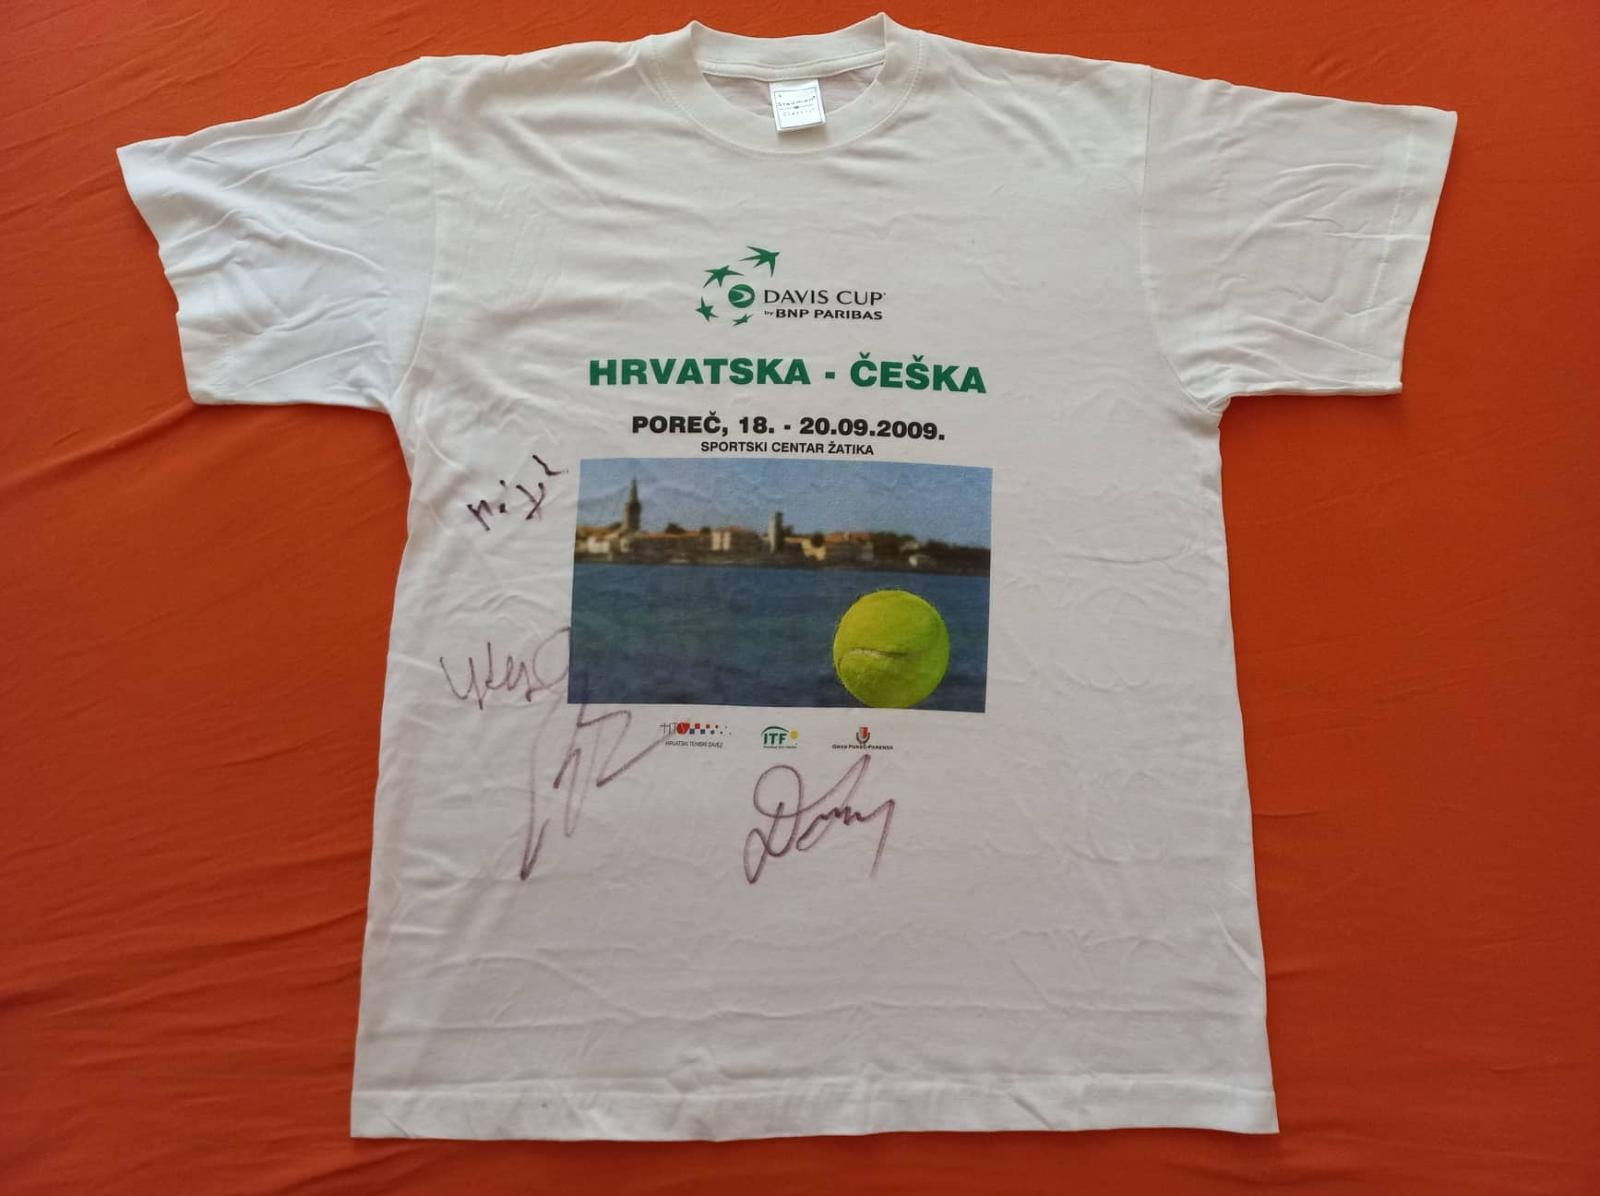 Tričko Davis Cup 2009 - Podpisy Berdych, Štefan, Hájek, Dlhý - Zberateľstvo